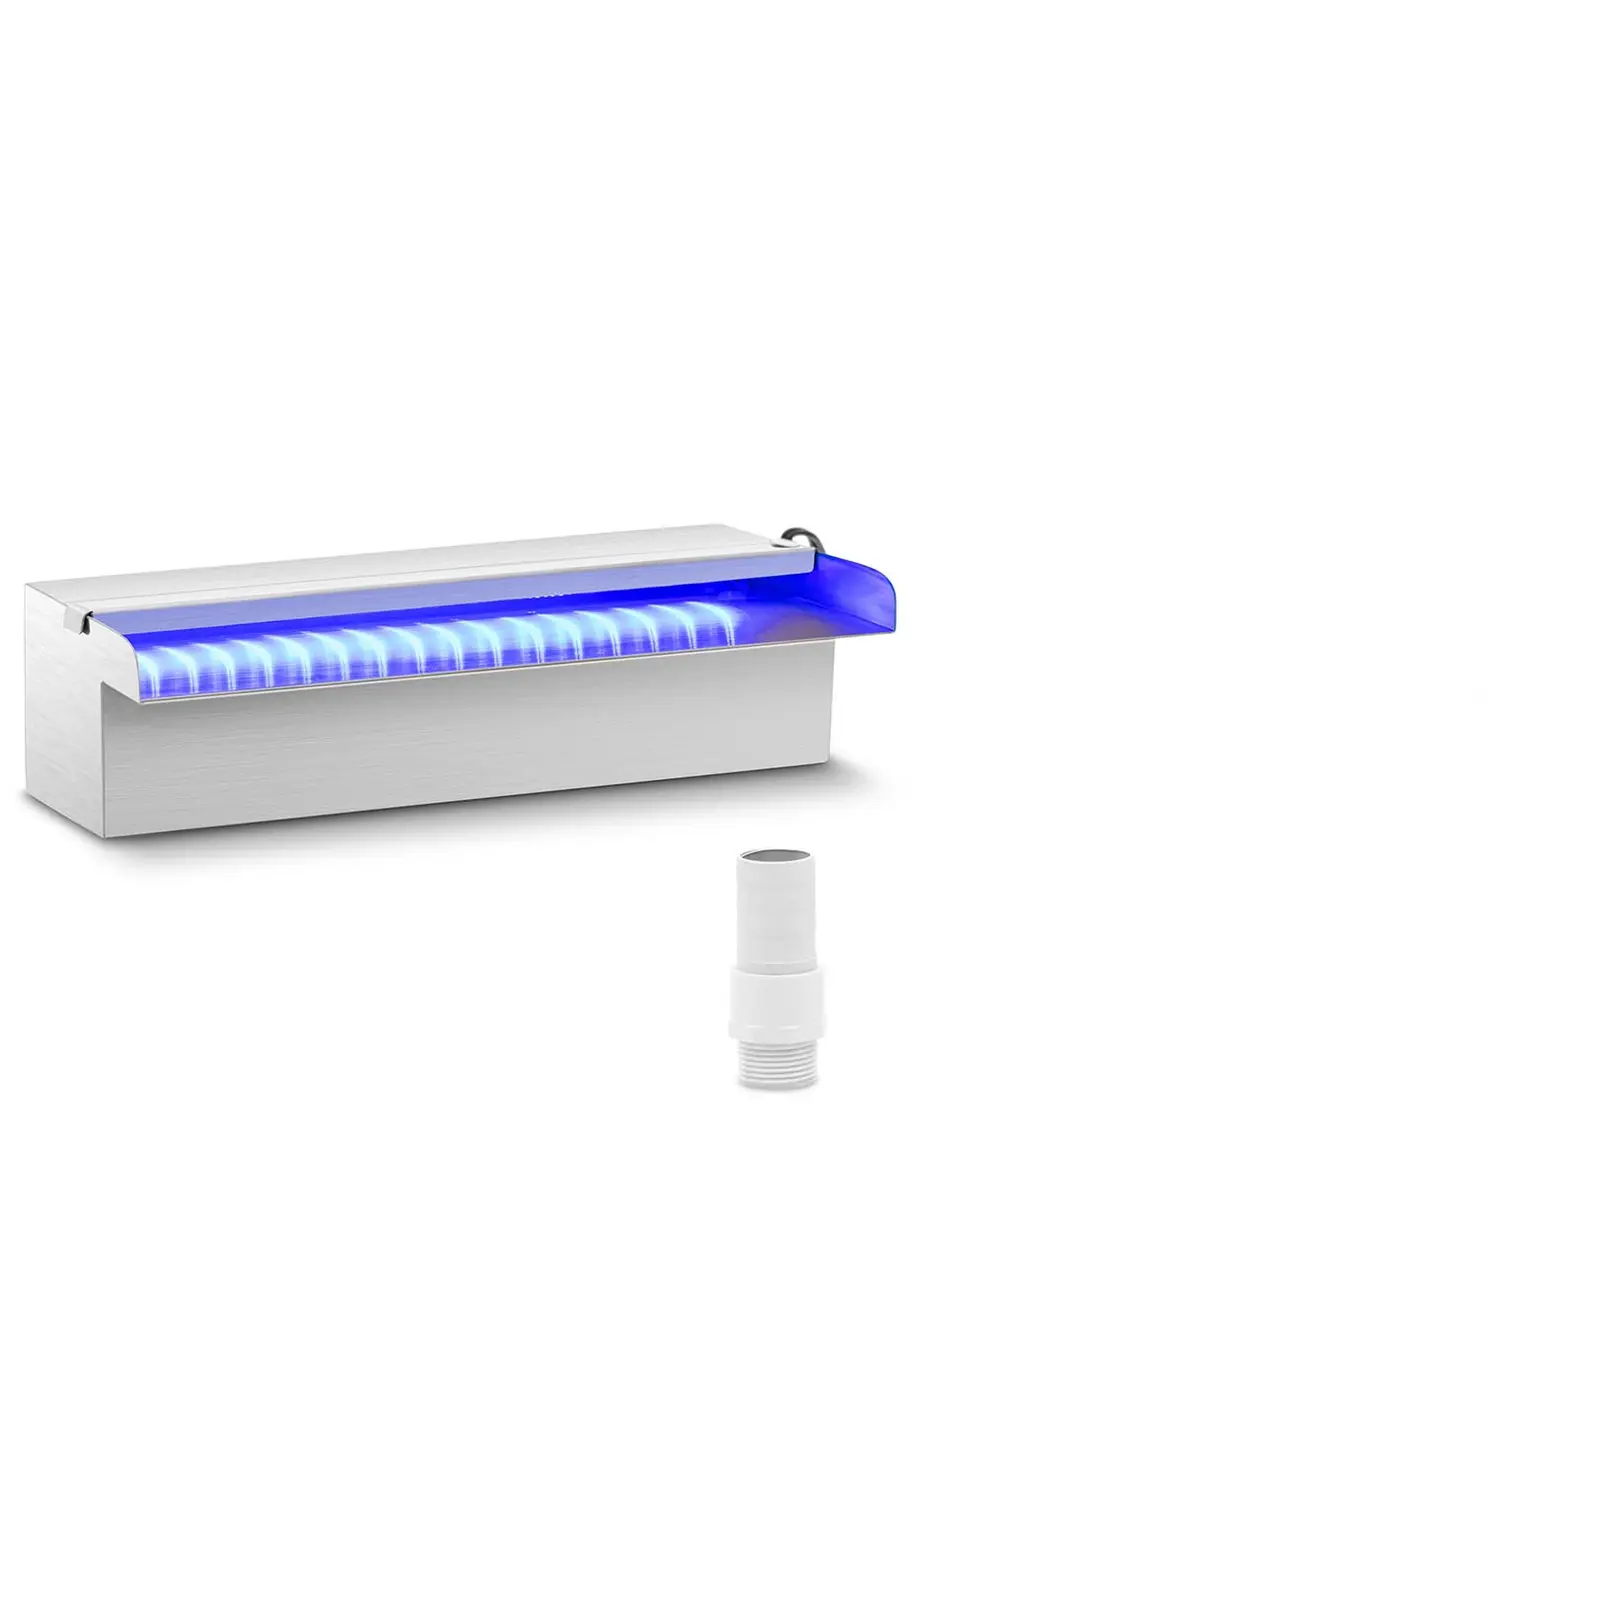 Силен душ - 30 cm - LED осветление - Синьо / Бяло